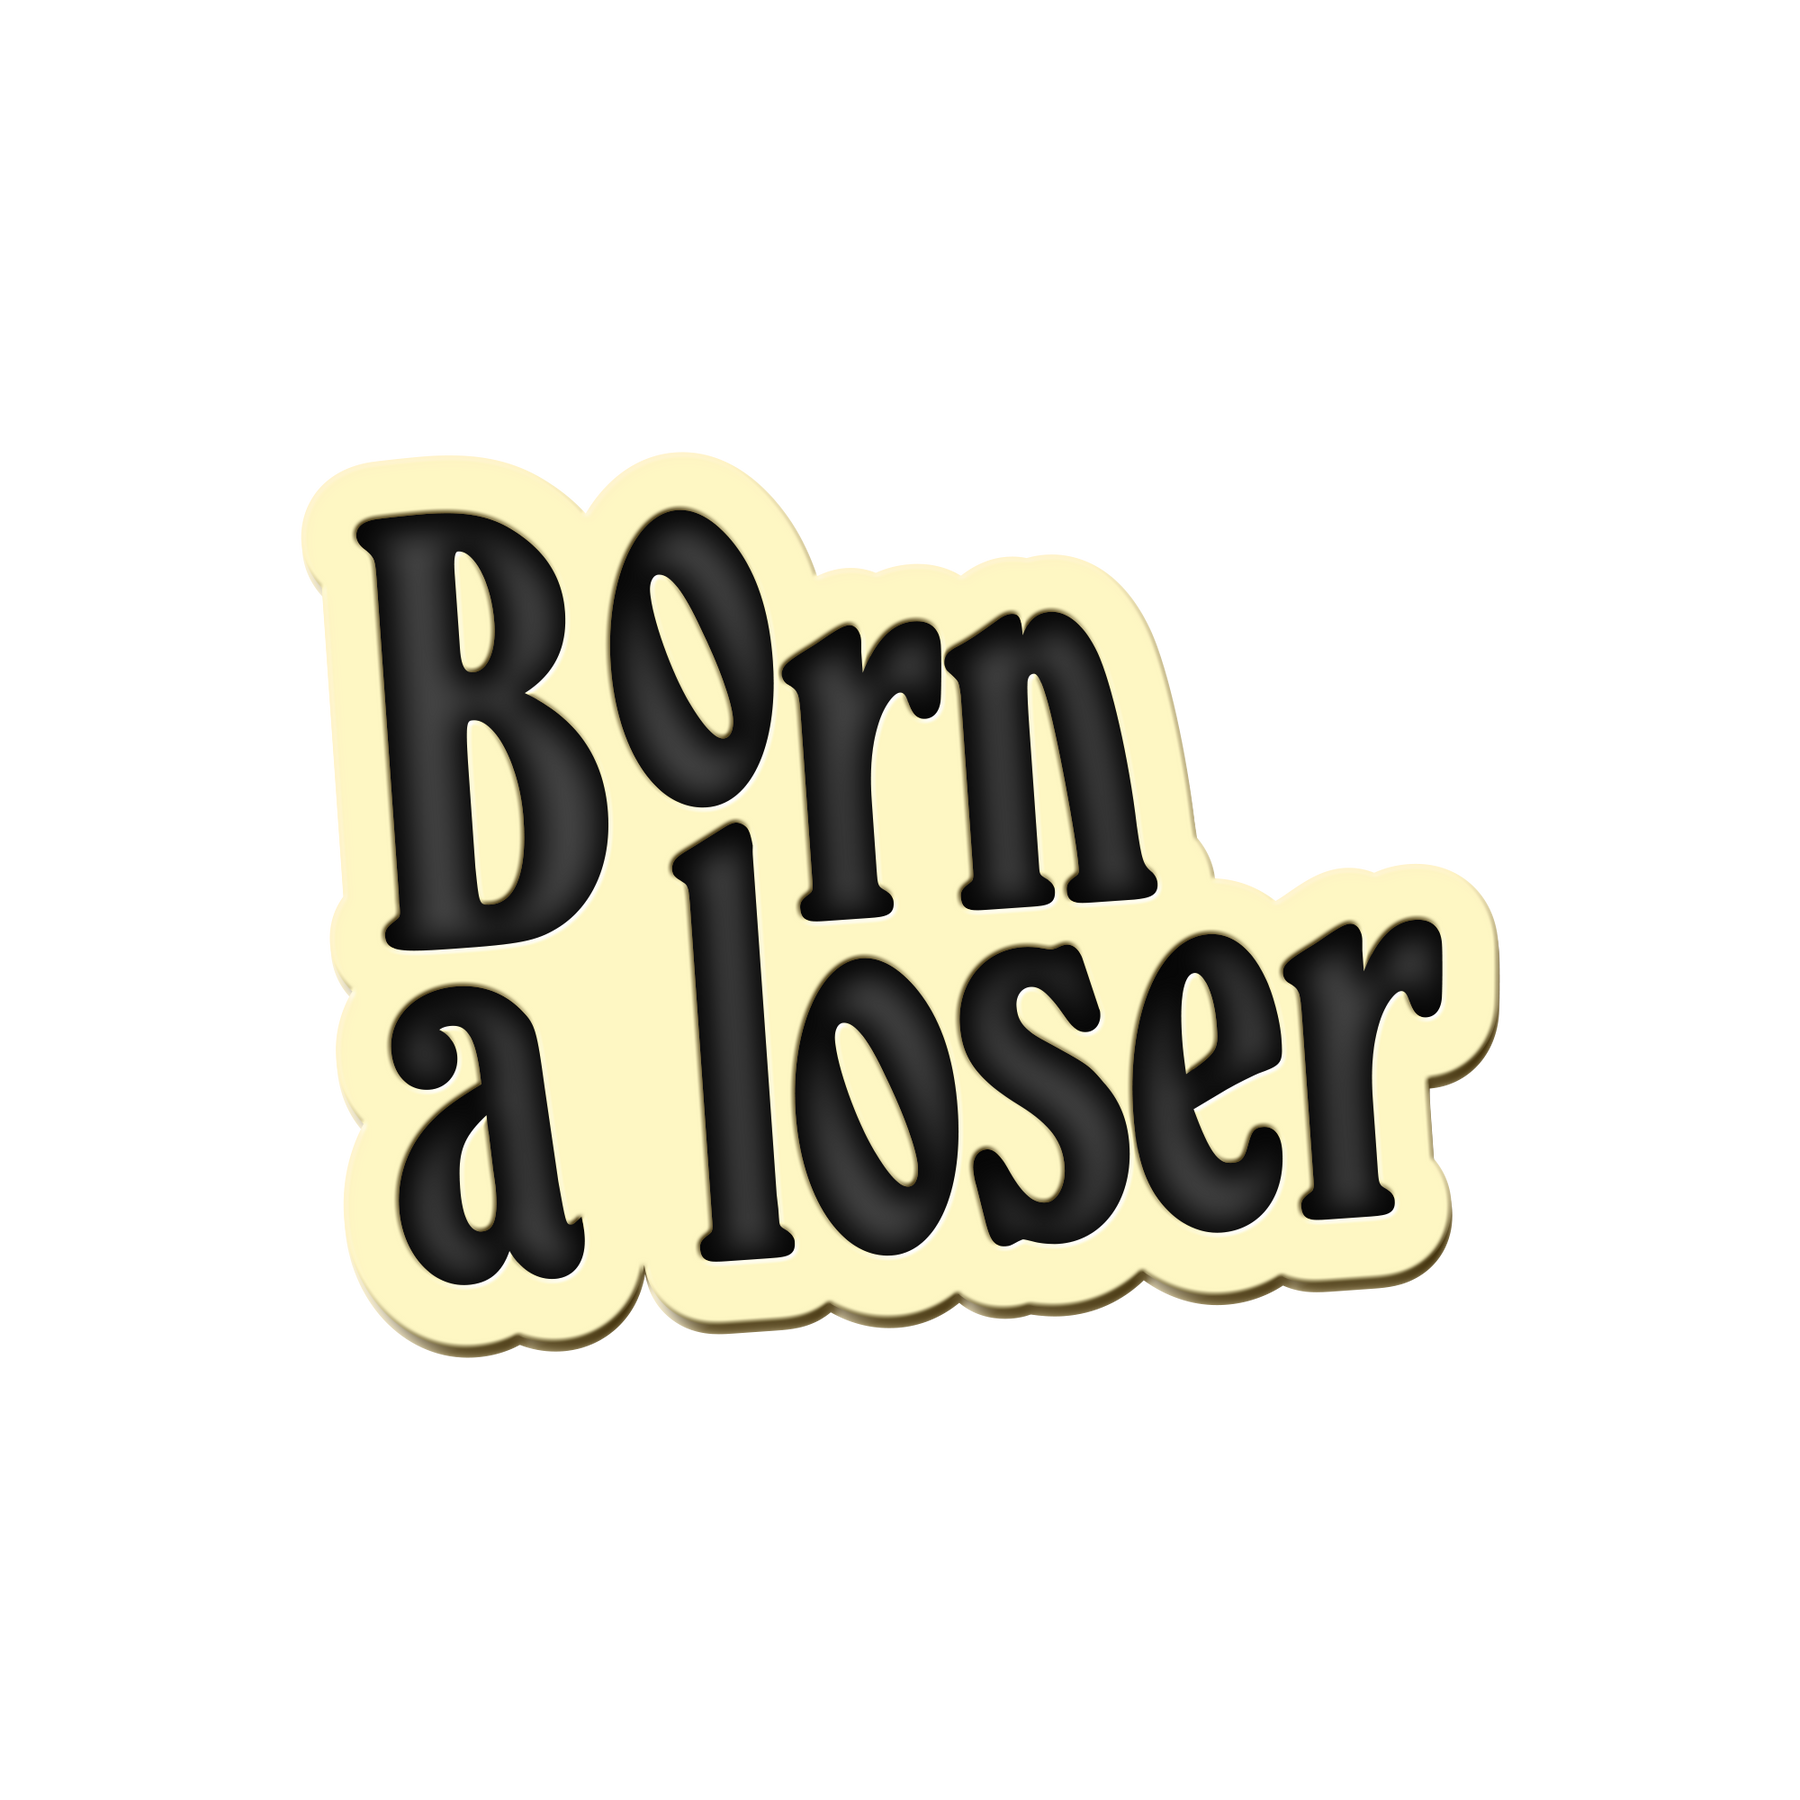 1618907121_pins-born-a-loser-2